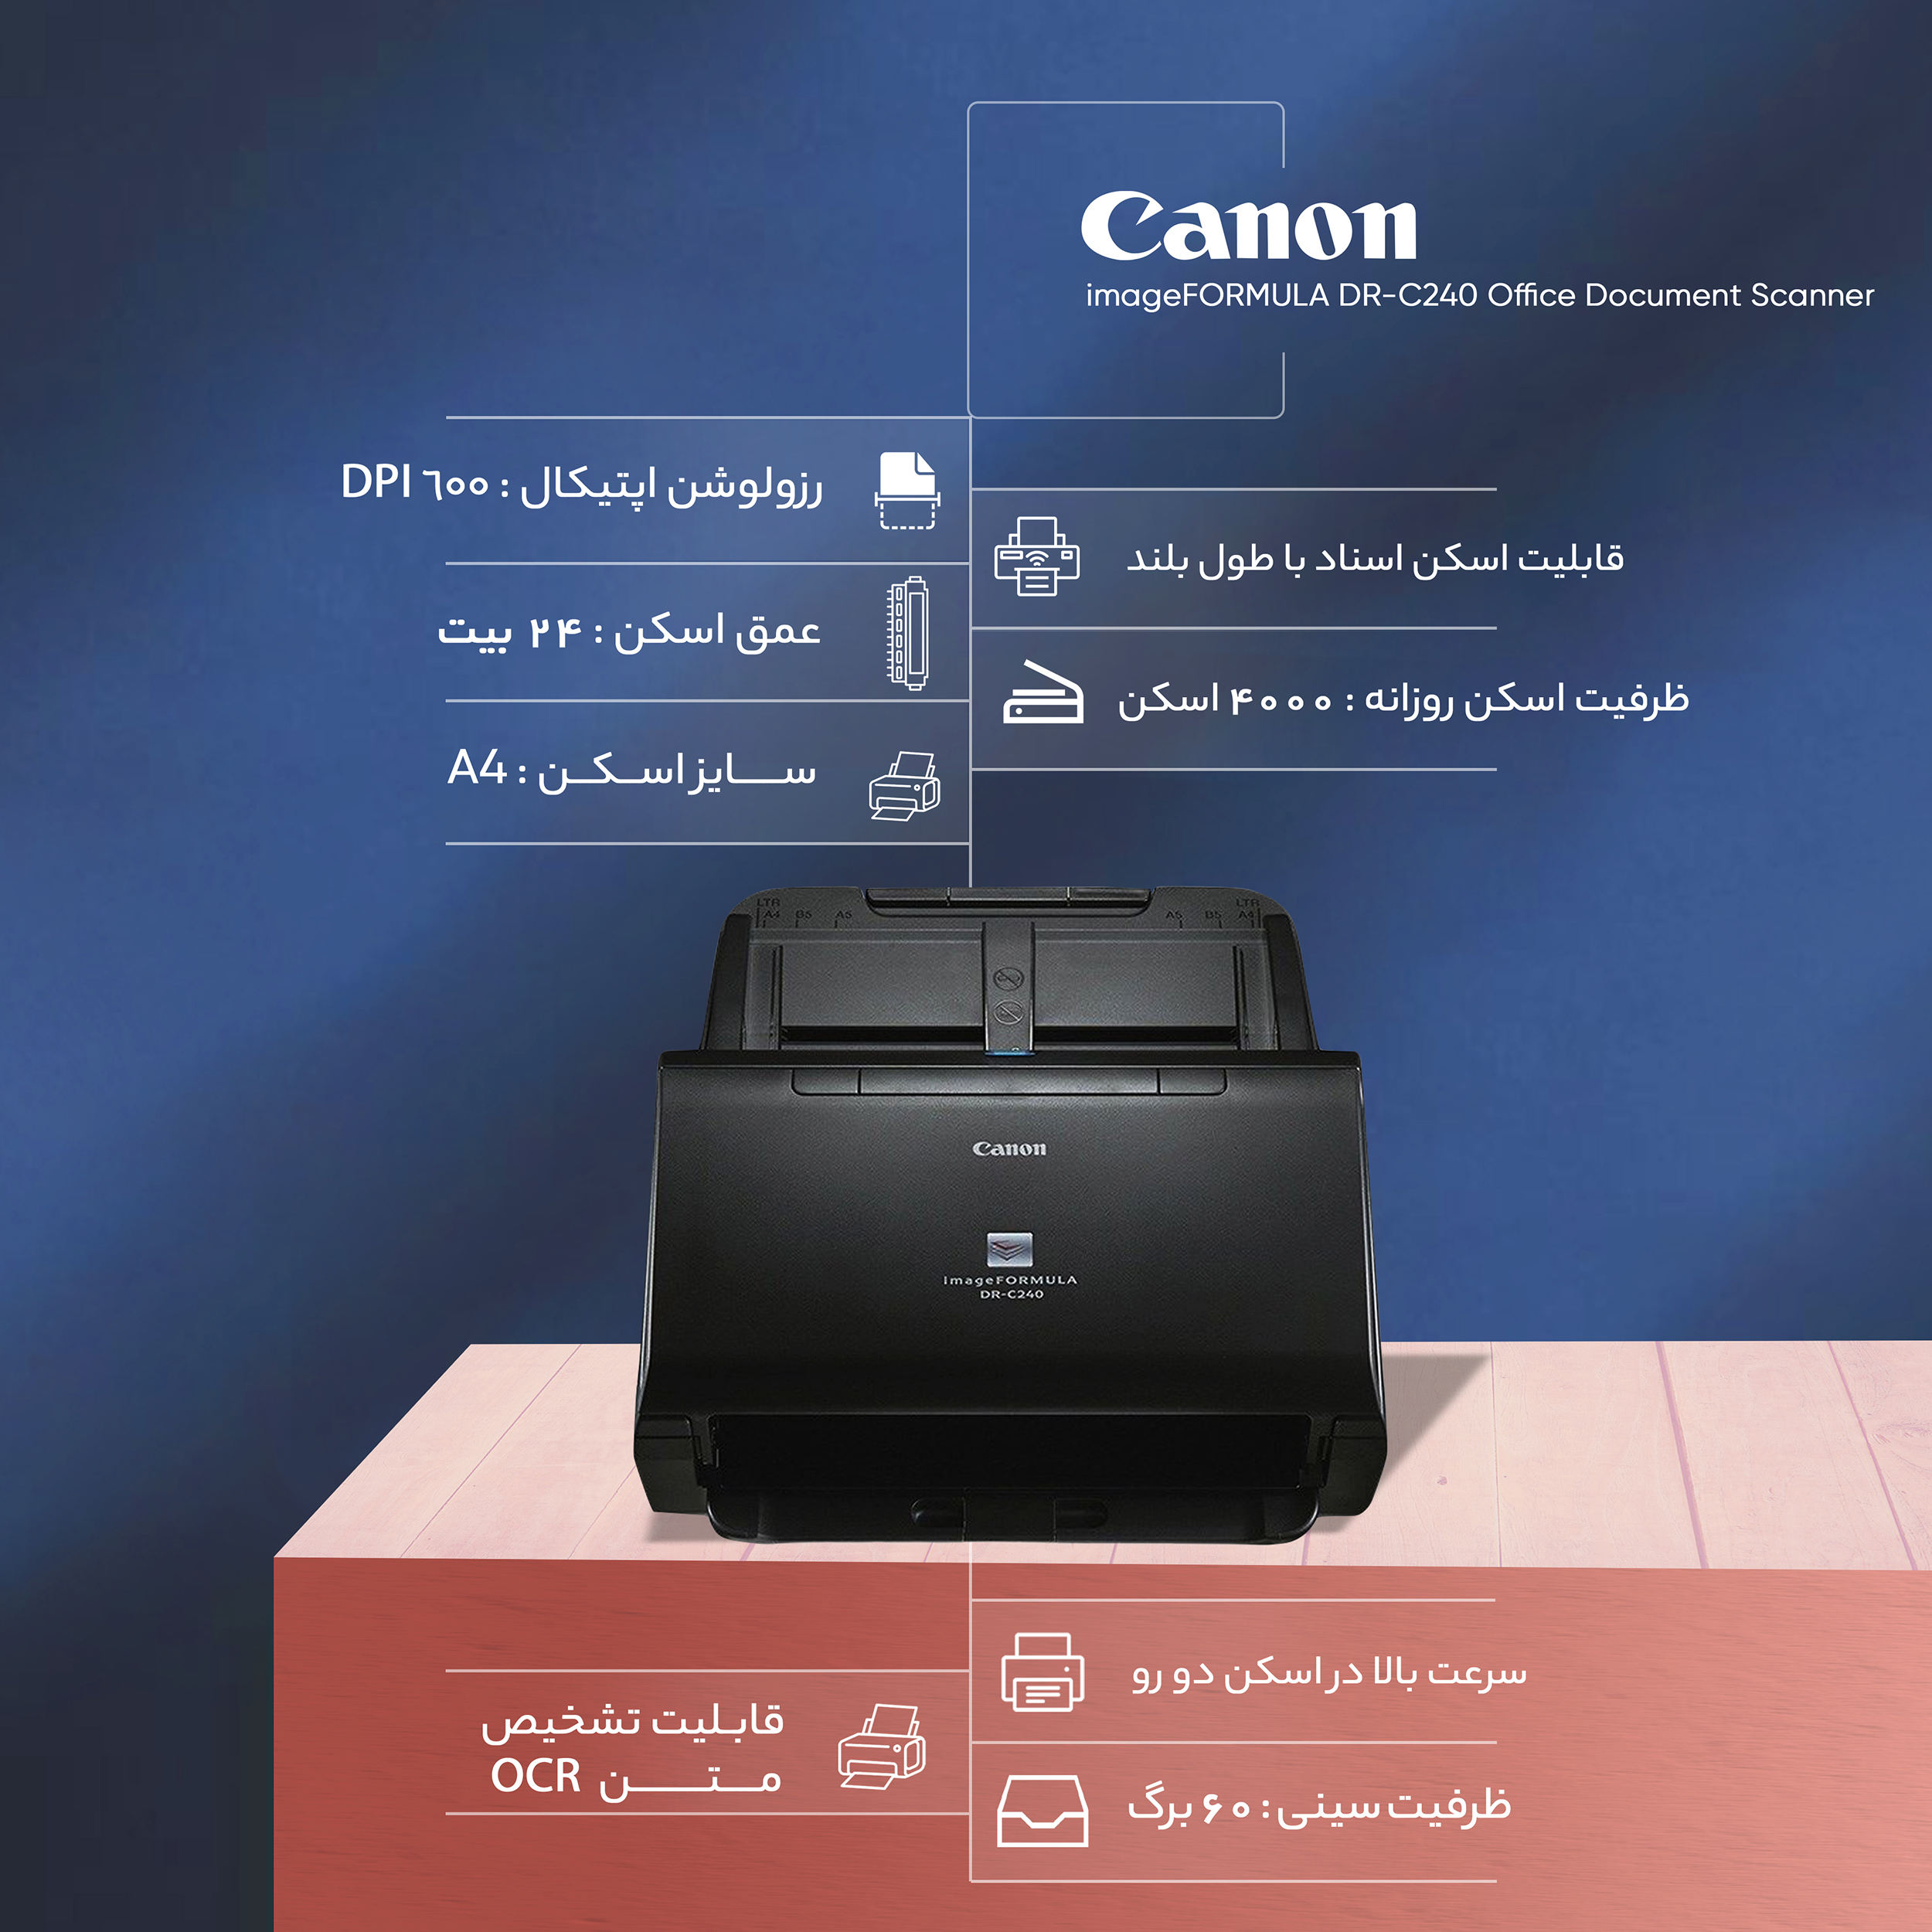 Canon ドキュメントスキャナー imageFORMULA DR-C240(両面読取 ADF60枚 A4カラー60面 分) - 4